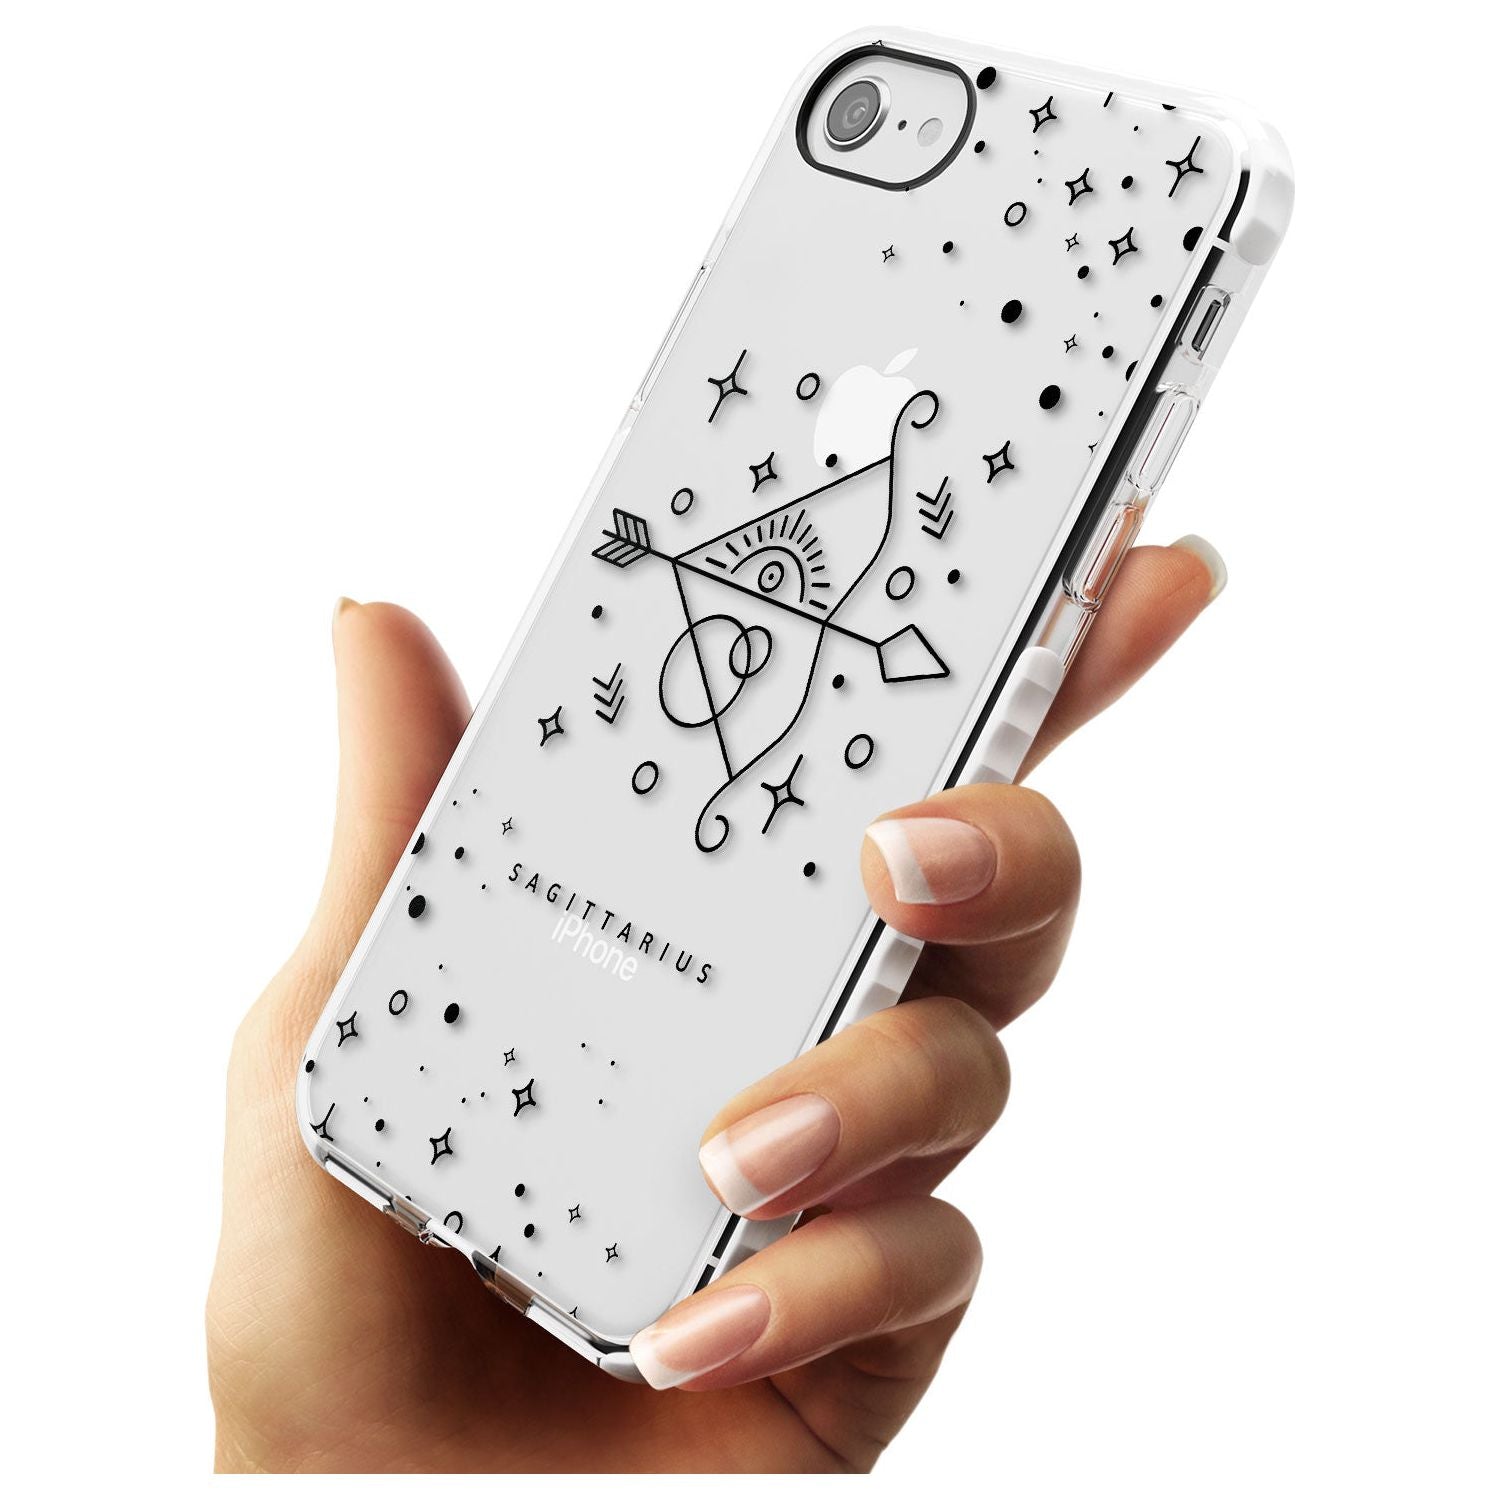 Sagittarius Emblem - Transparent Design Impact Phone Case for iPhone SE 8 7 Plus